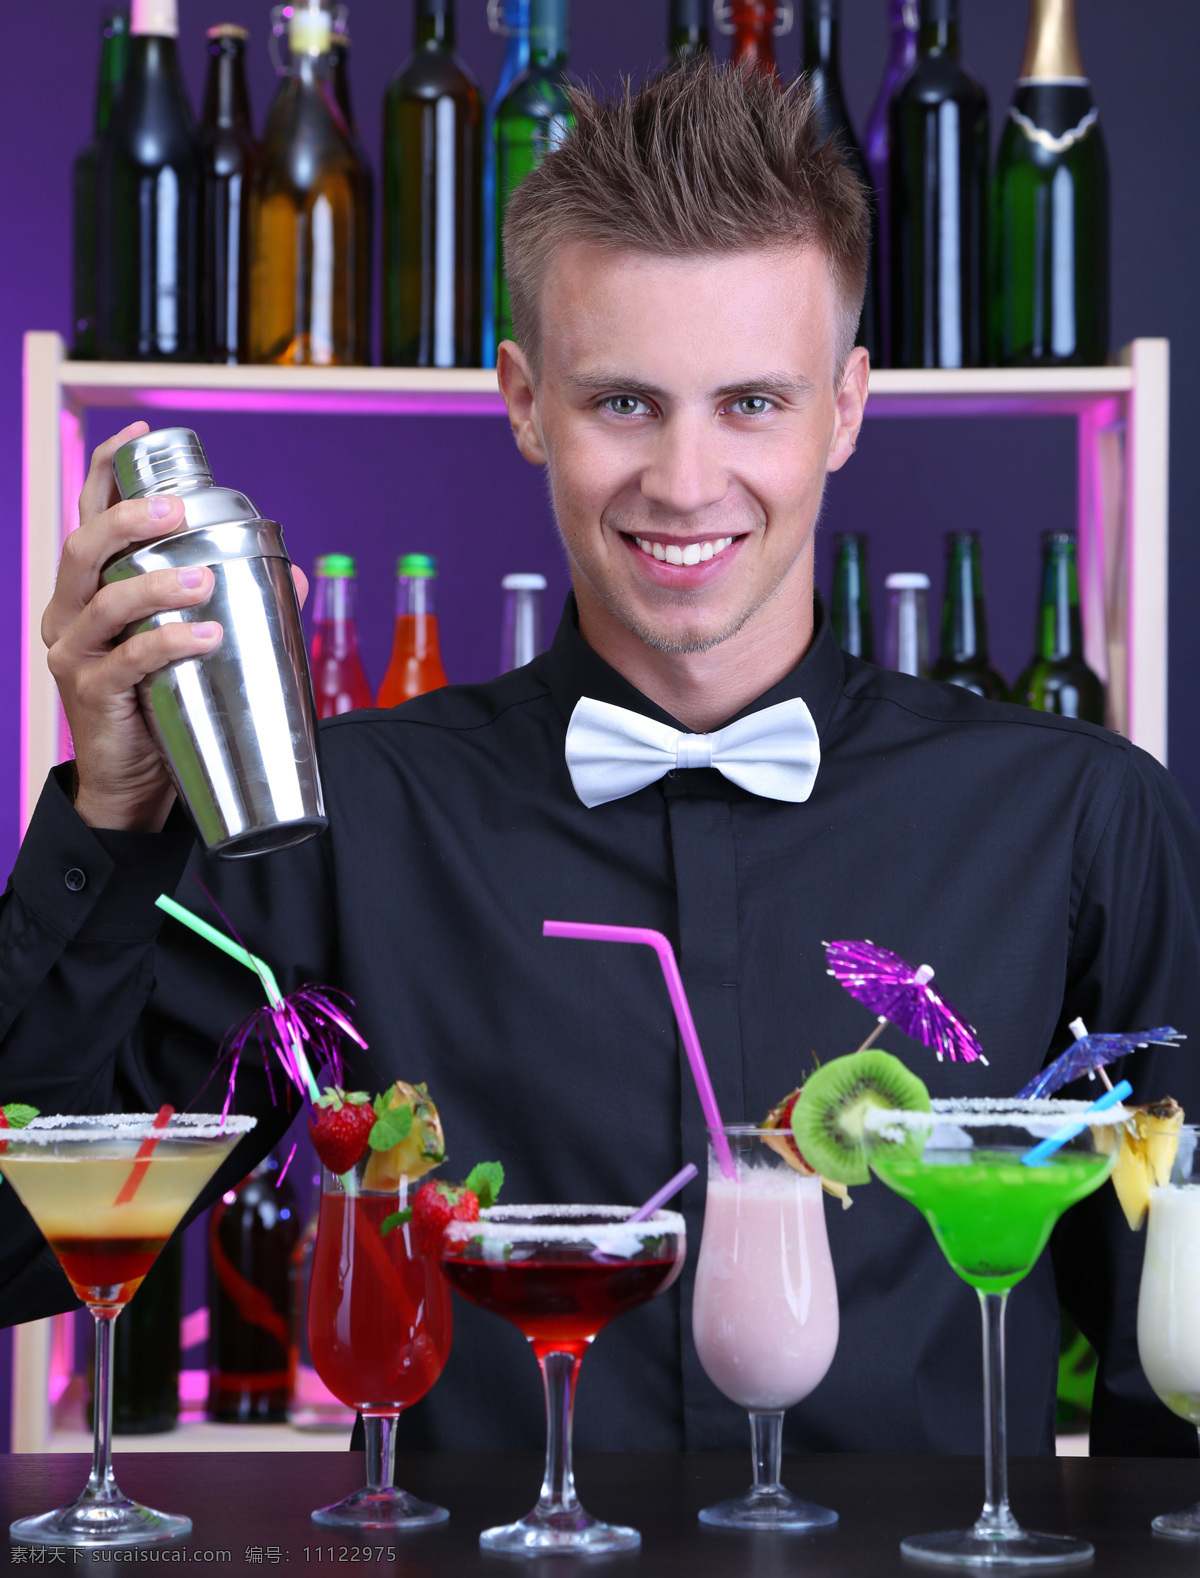 高清 调酒师 酒吧 服务员 鸡尾酒 餐厅 ktv 生活娱乐 商务人士 人物图片